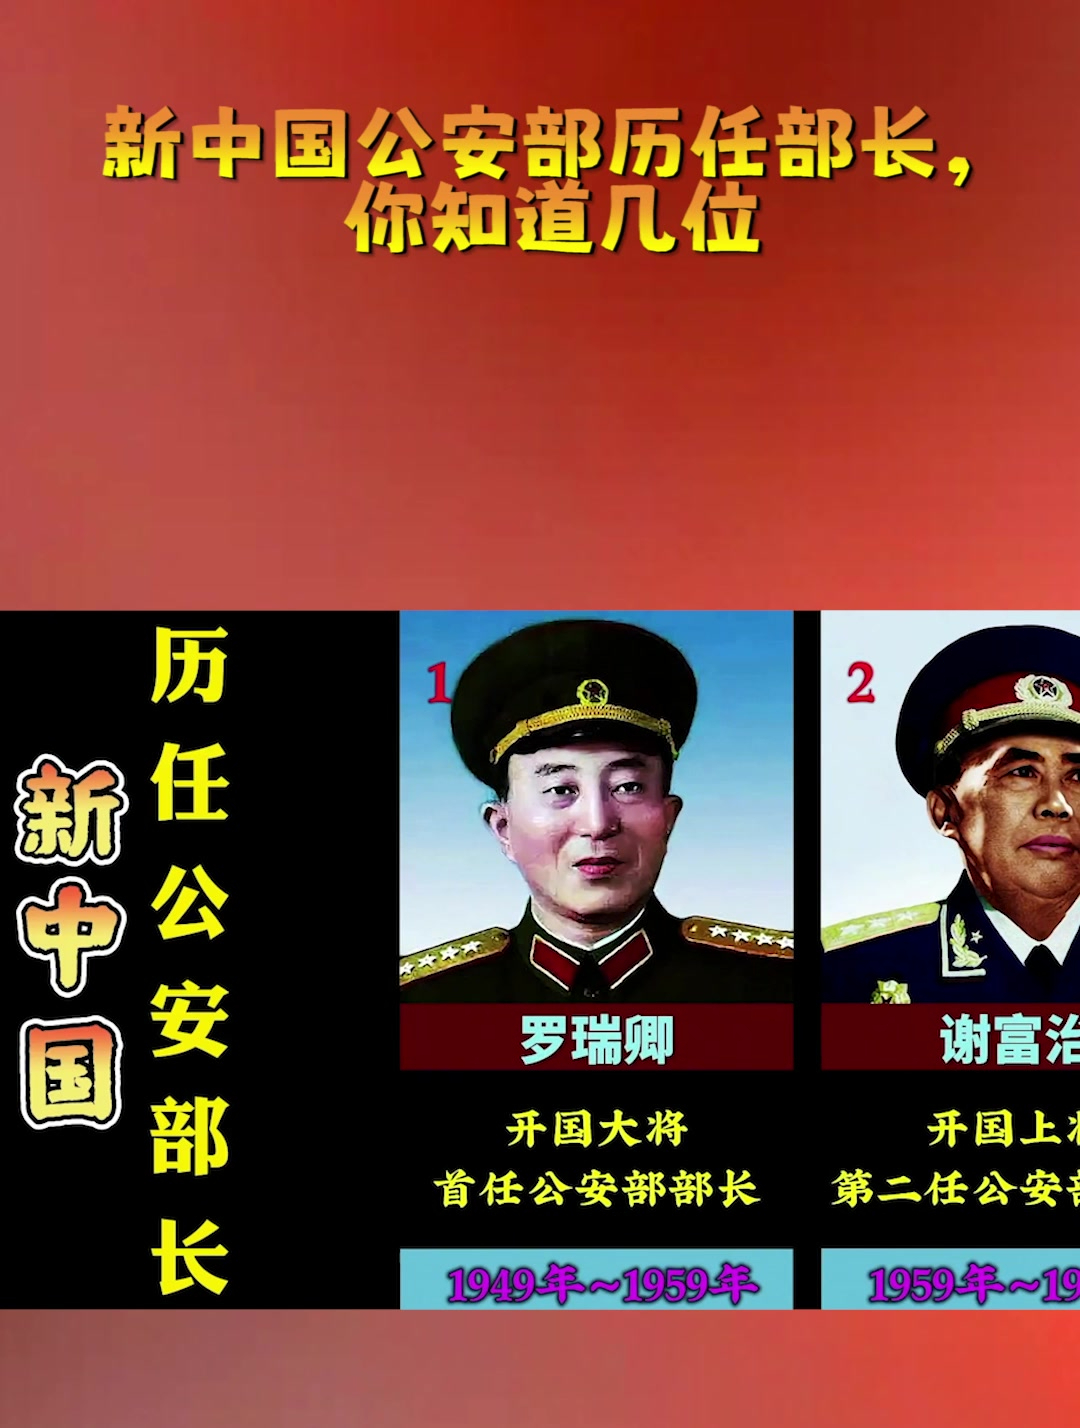 新一届中央军委的首次会议 这个细节是40年来首次_荔枝网新闻